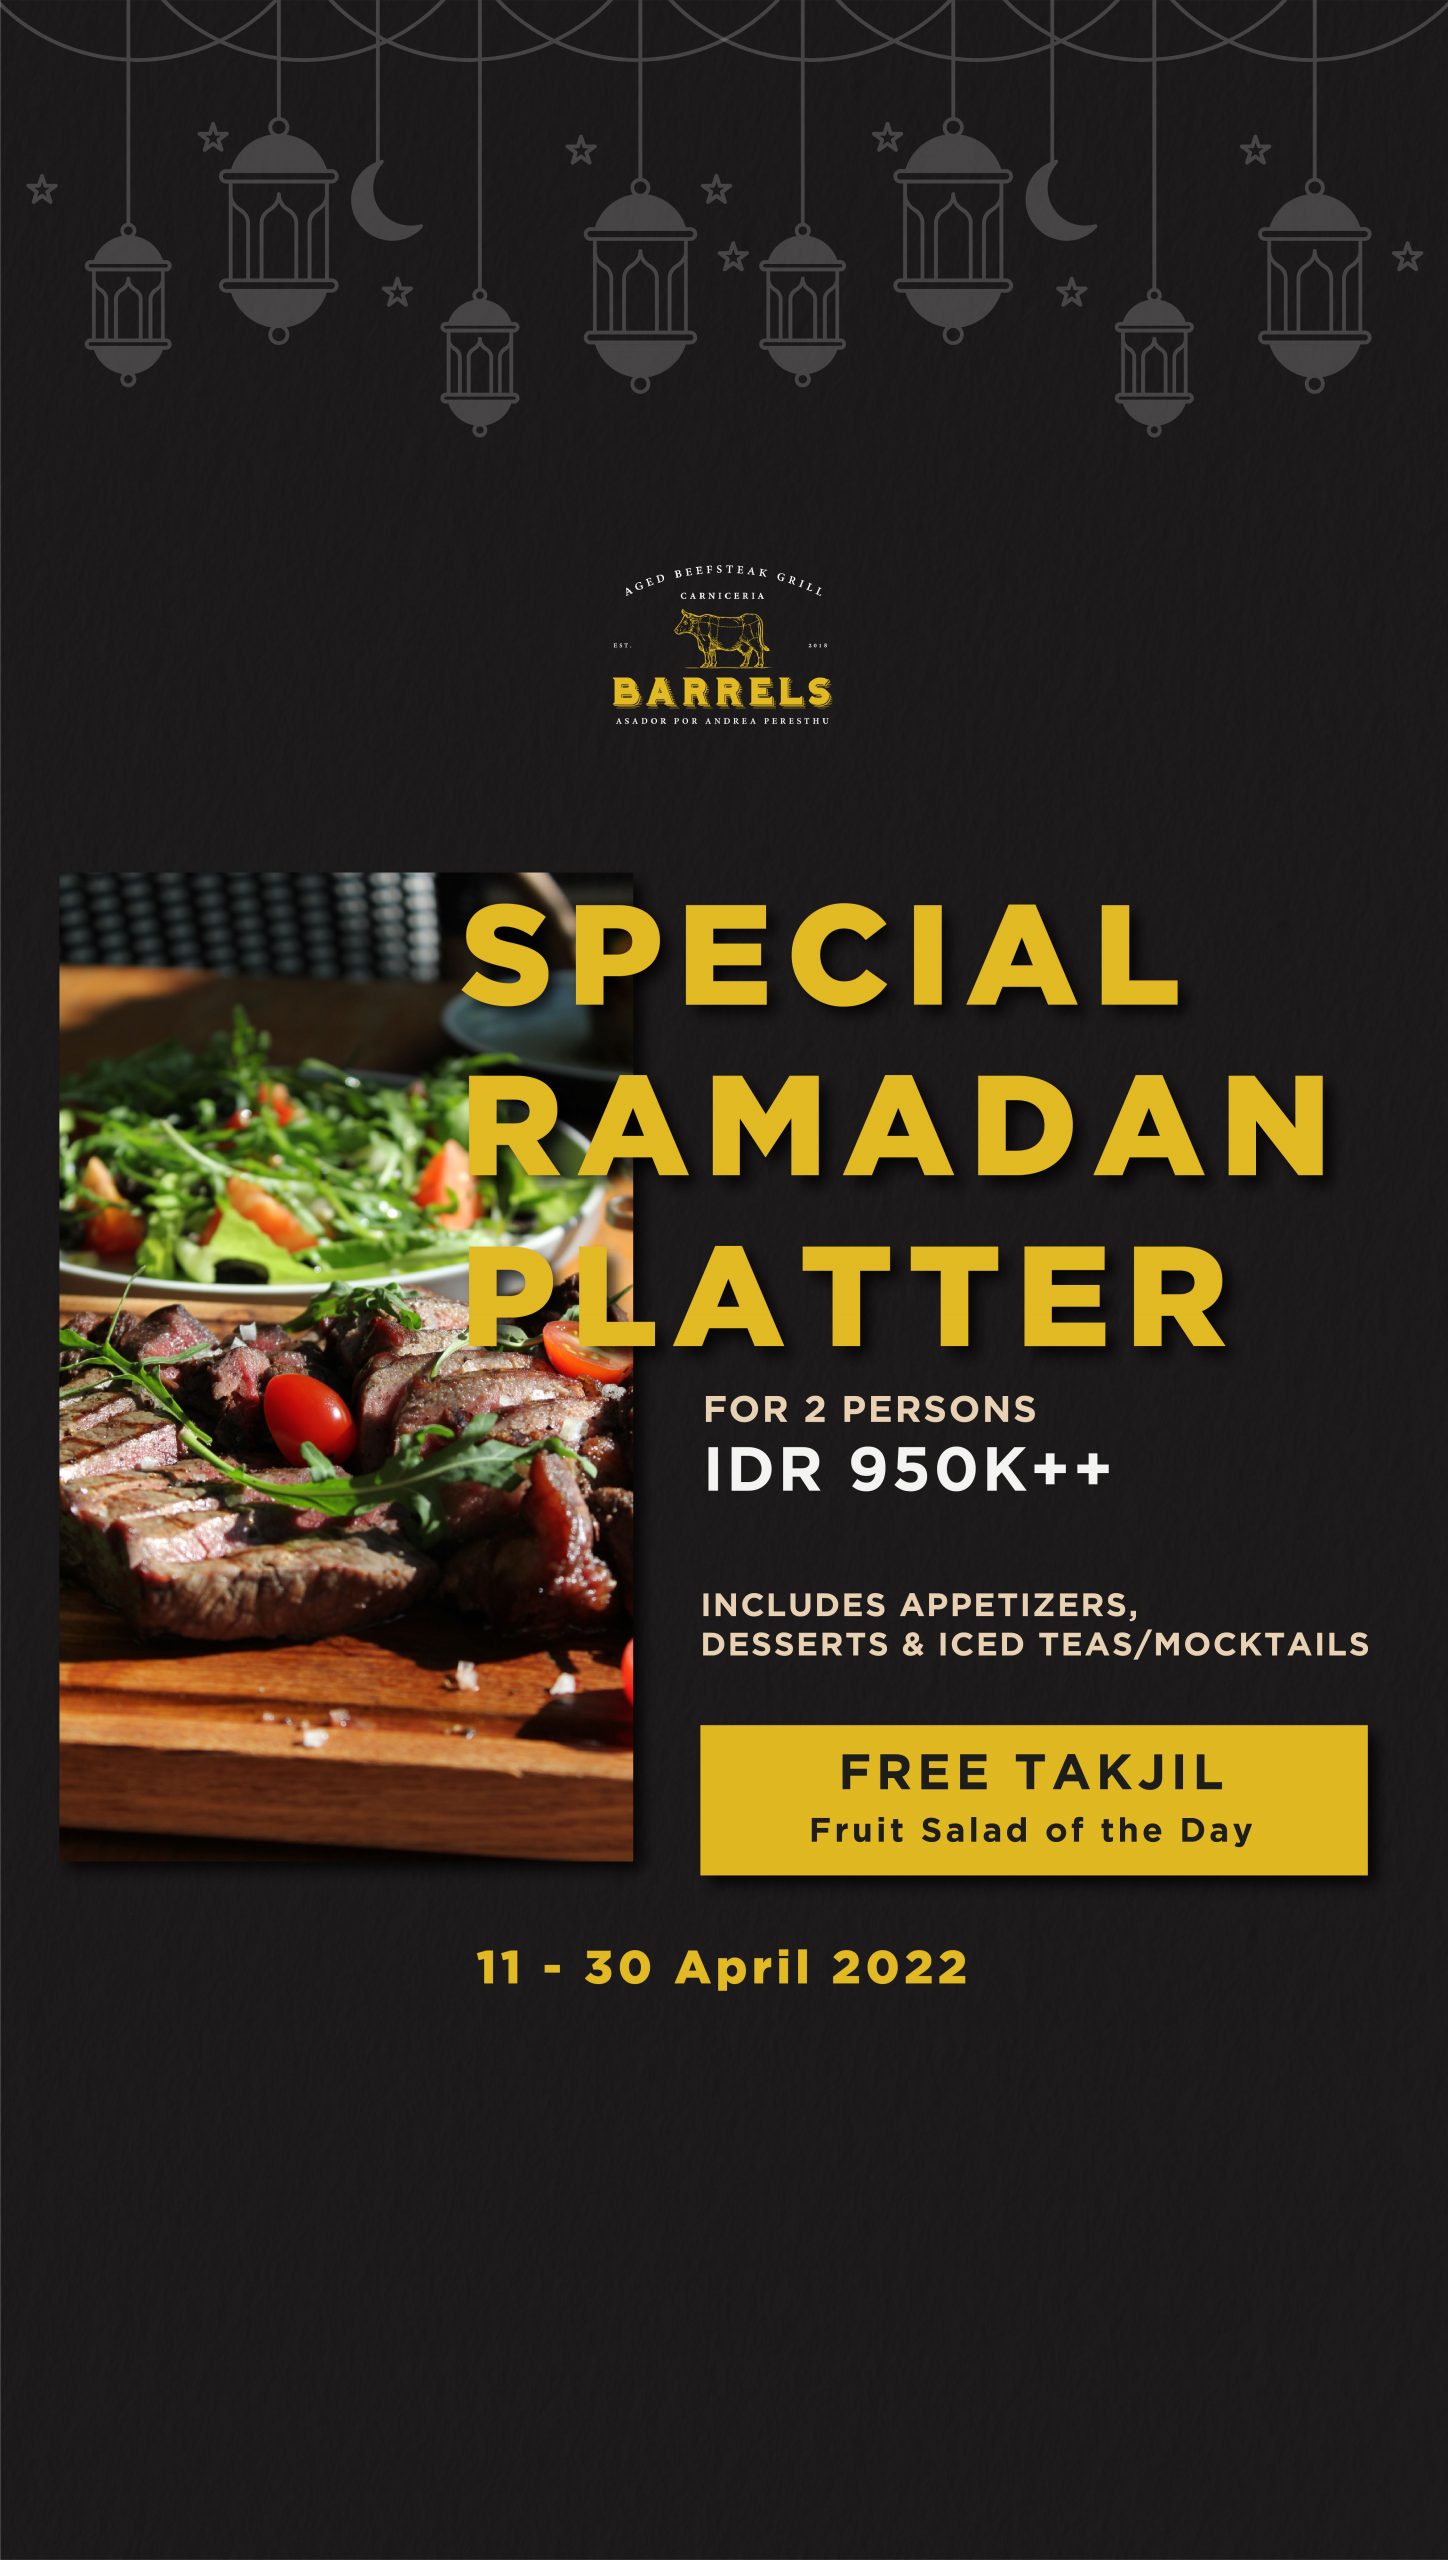 Special Ramadan Platter Barrels 20220325-03